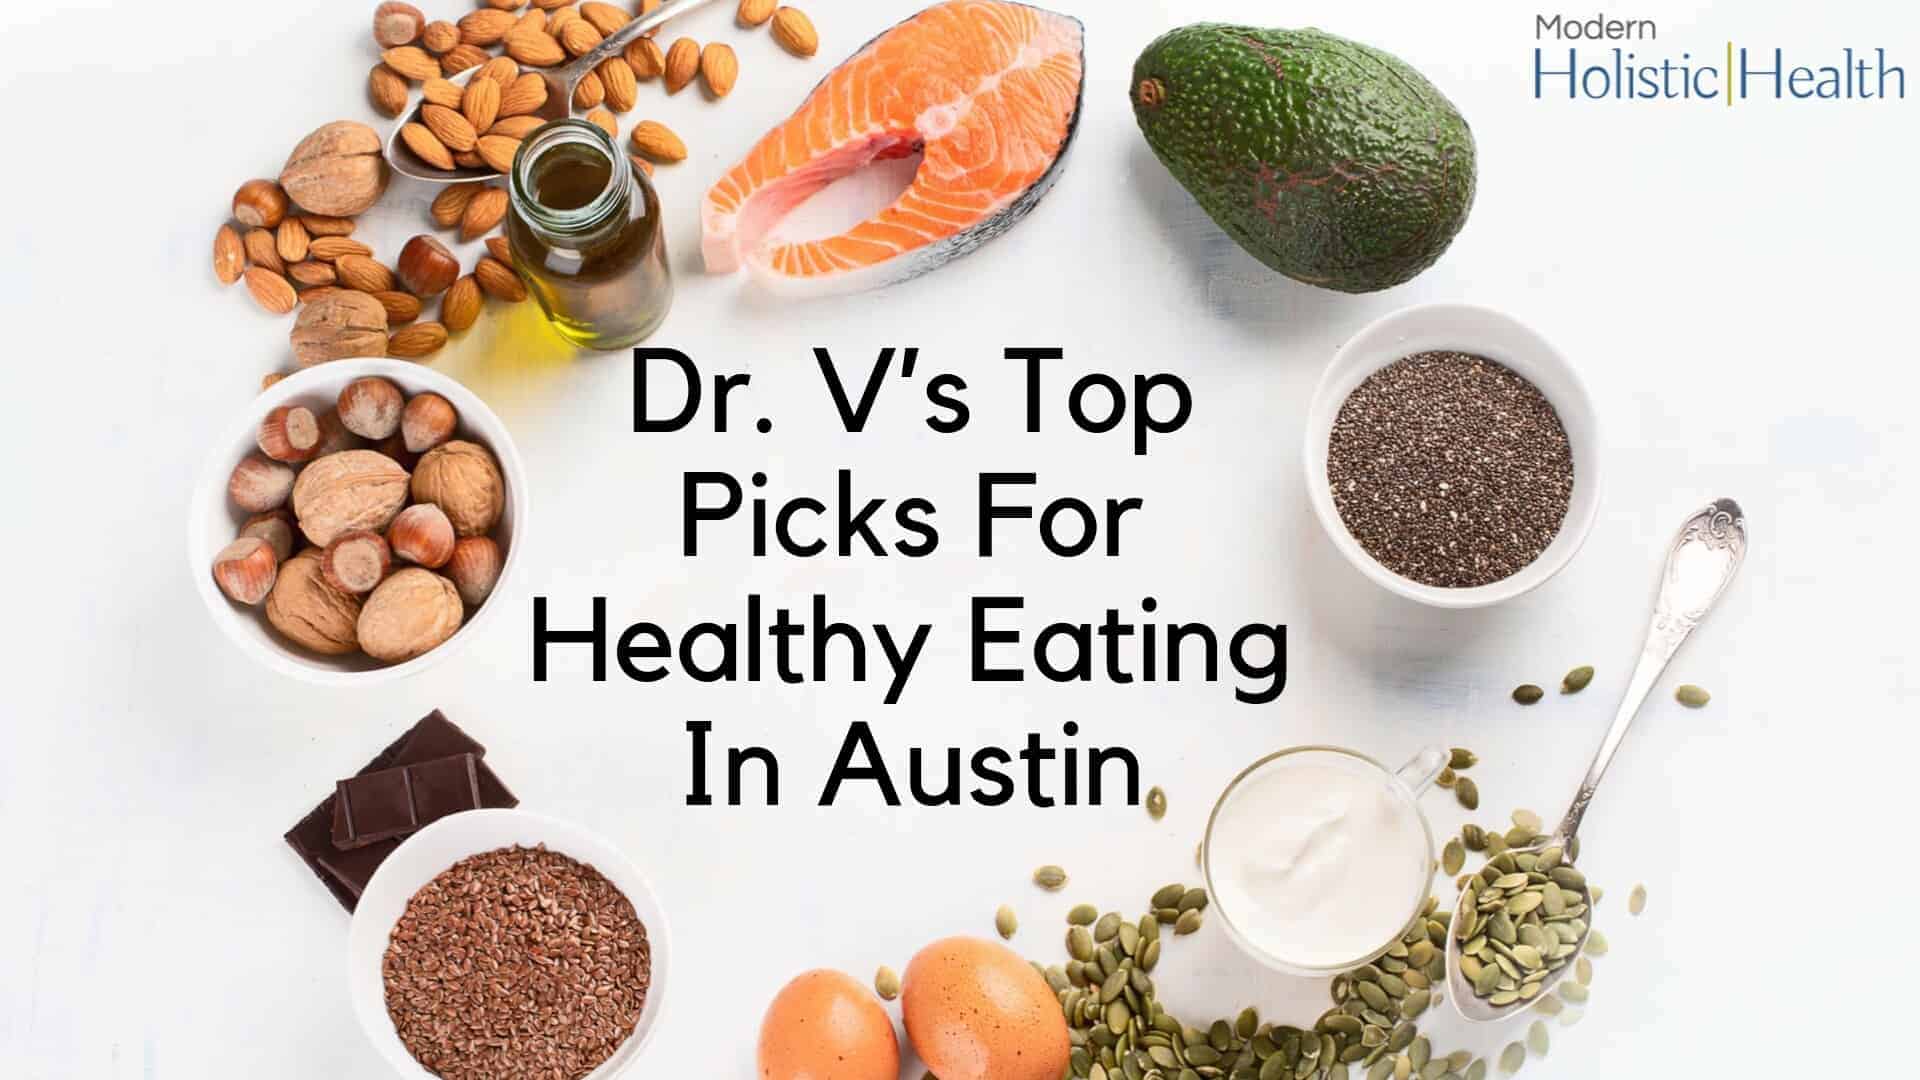 Dr. V’s Top Picks For Healthy Eating In Austin